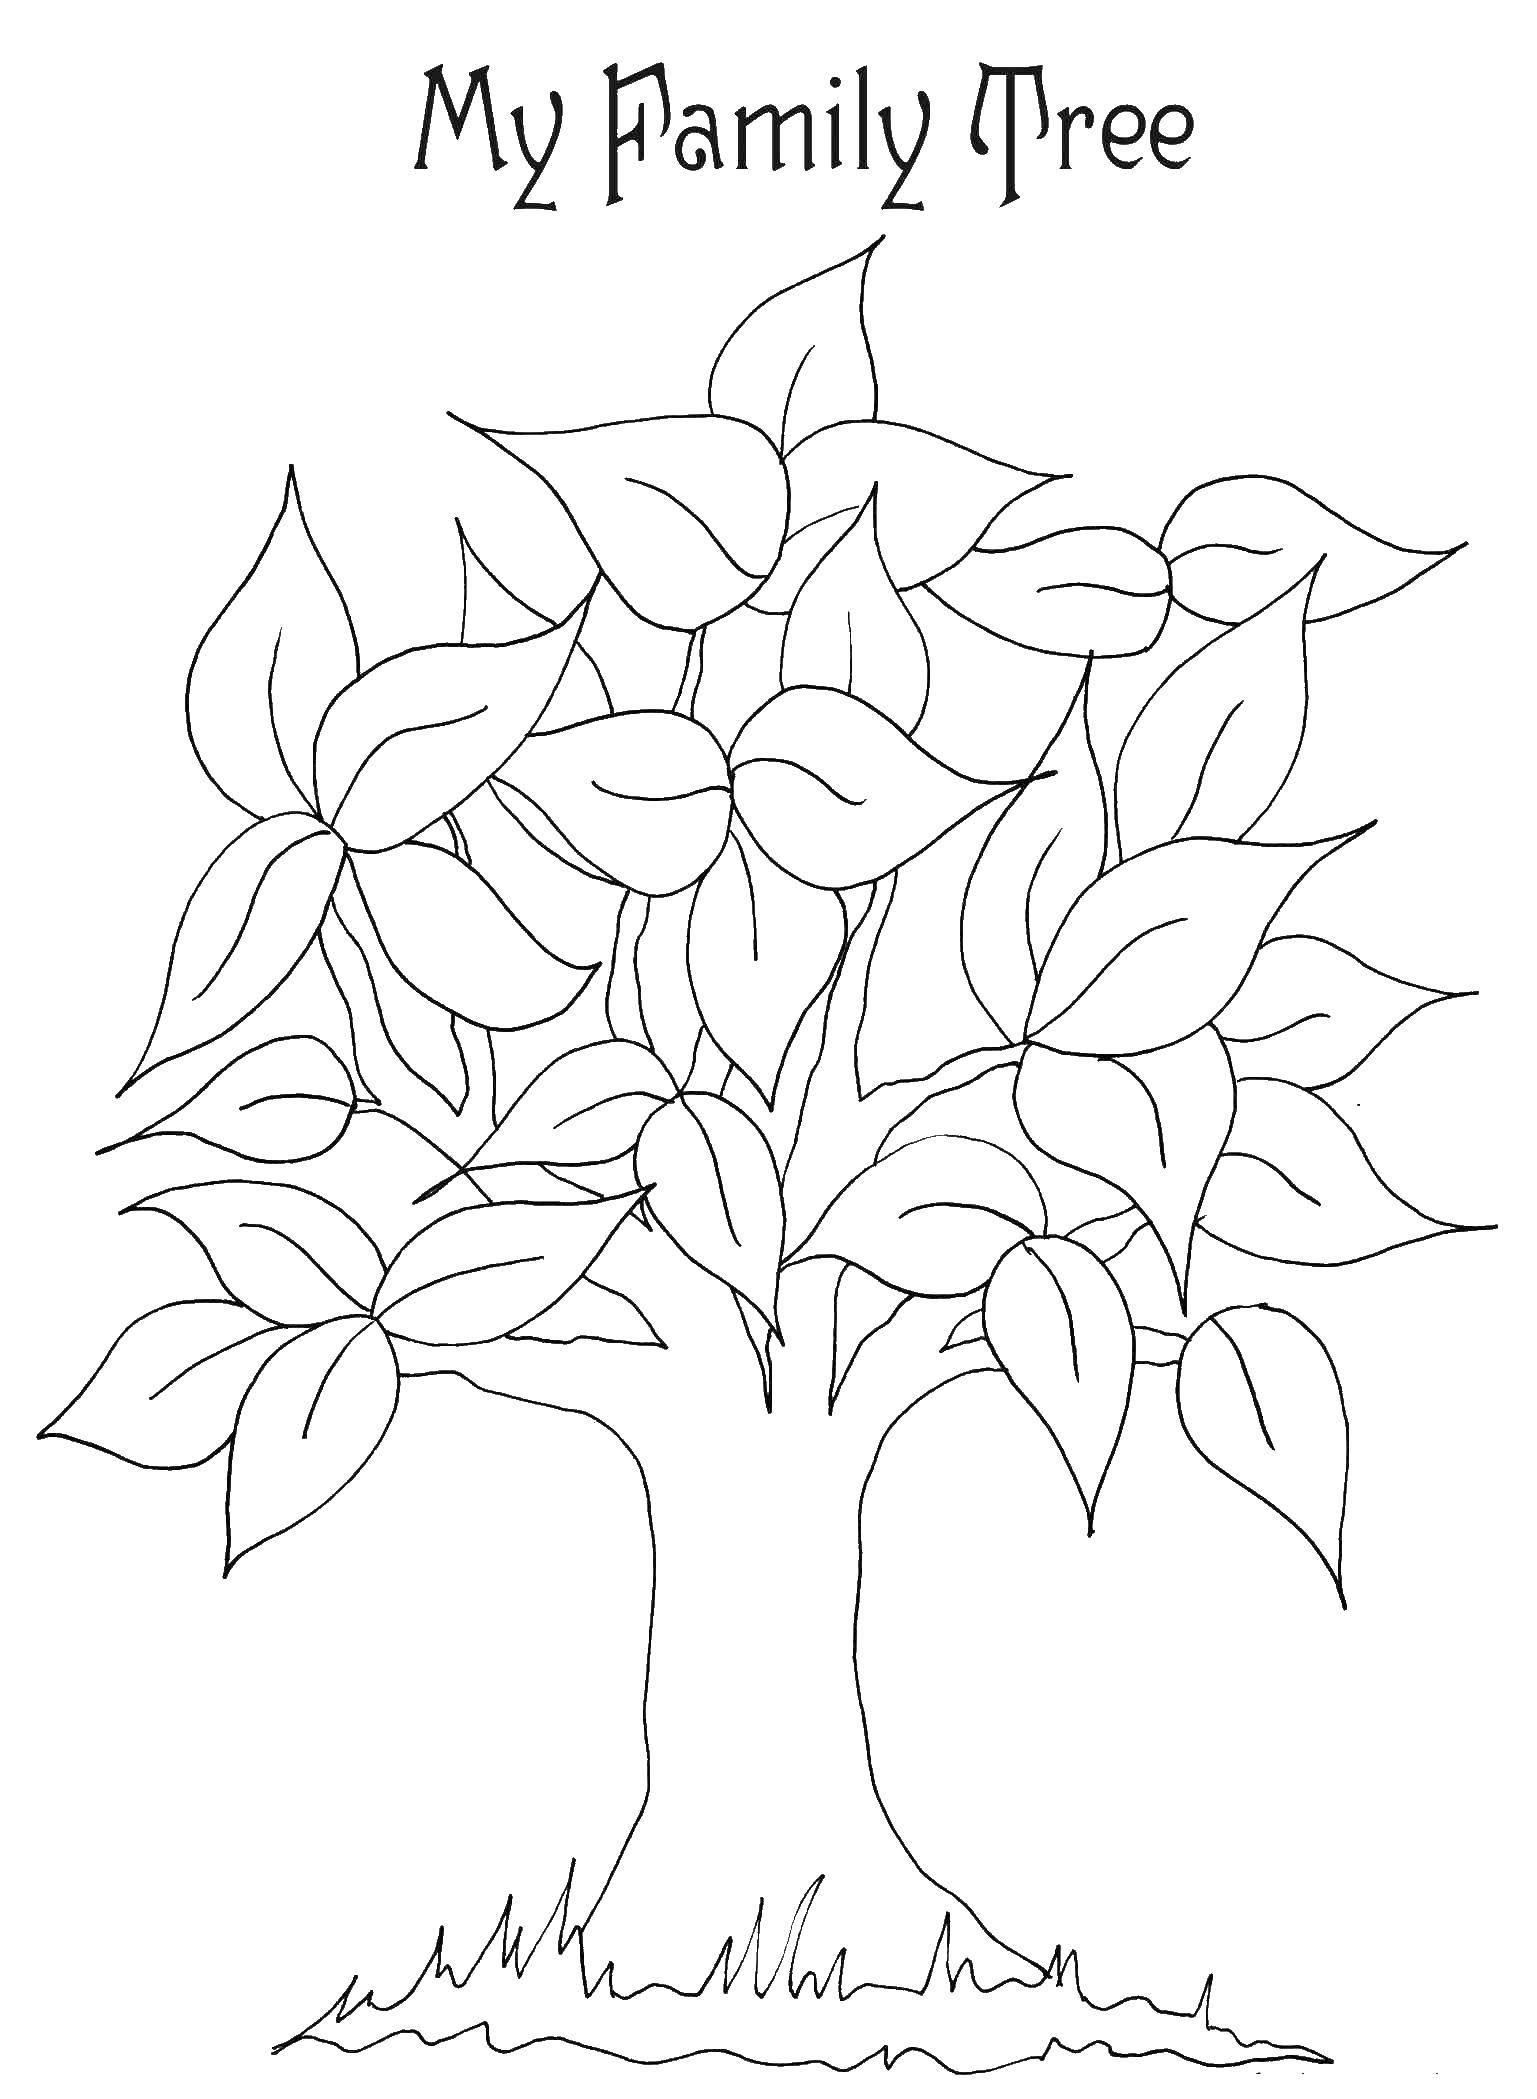 Раскраска с семейным деревом (семейное, дерево, дети, занятие)